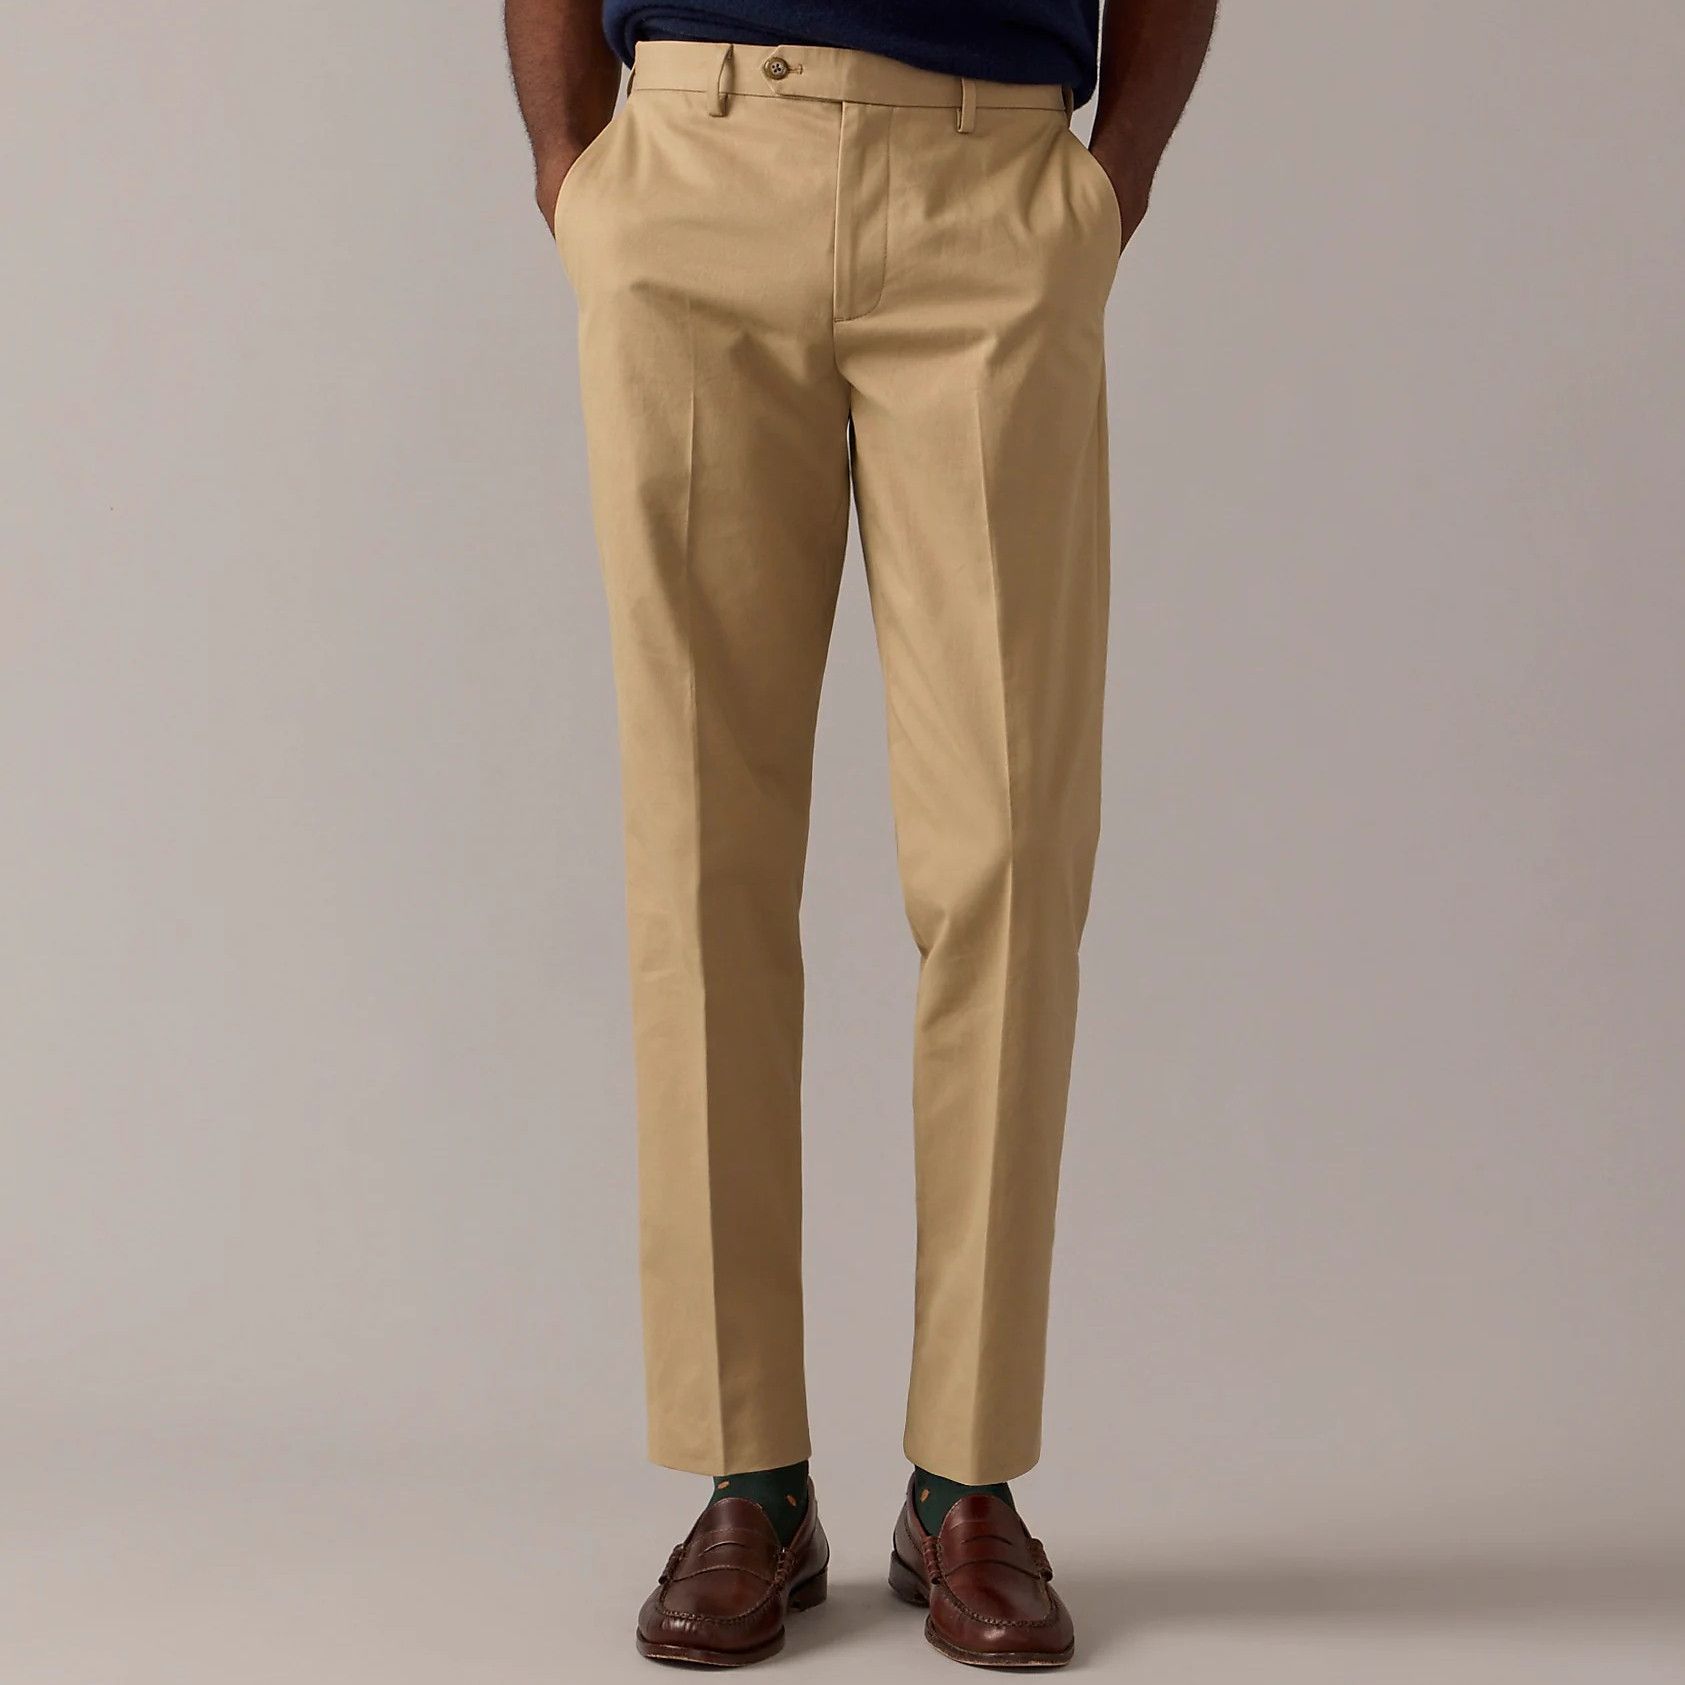 Chinos Pants Men Slim Fit Men's Trousers Suit Pants Ankle-Length Zipper  Pants Casual Pocket Pleated Solid Men's pants Khaki XXXXXXXXL - Walmart.com